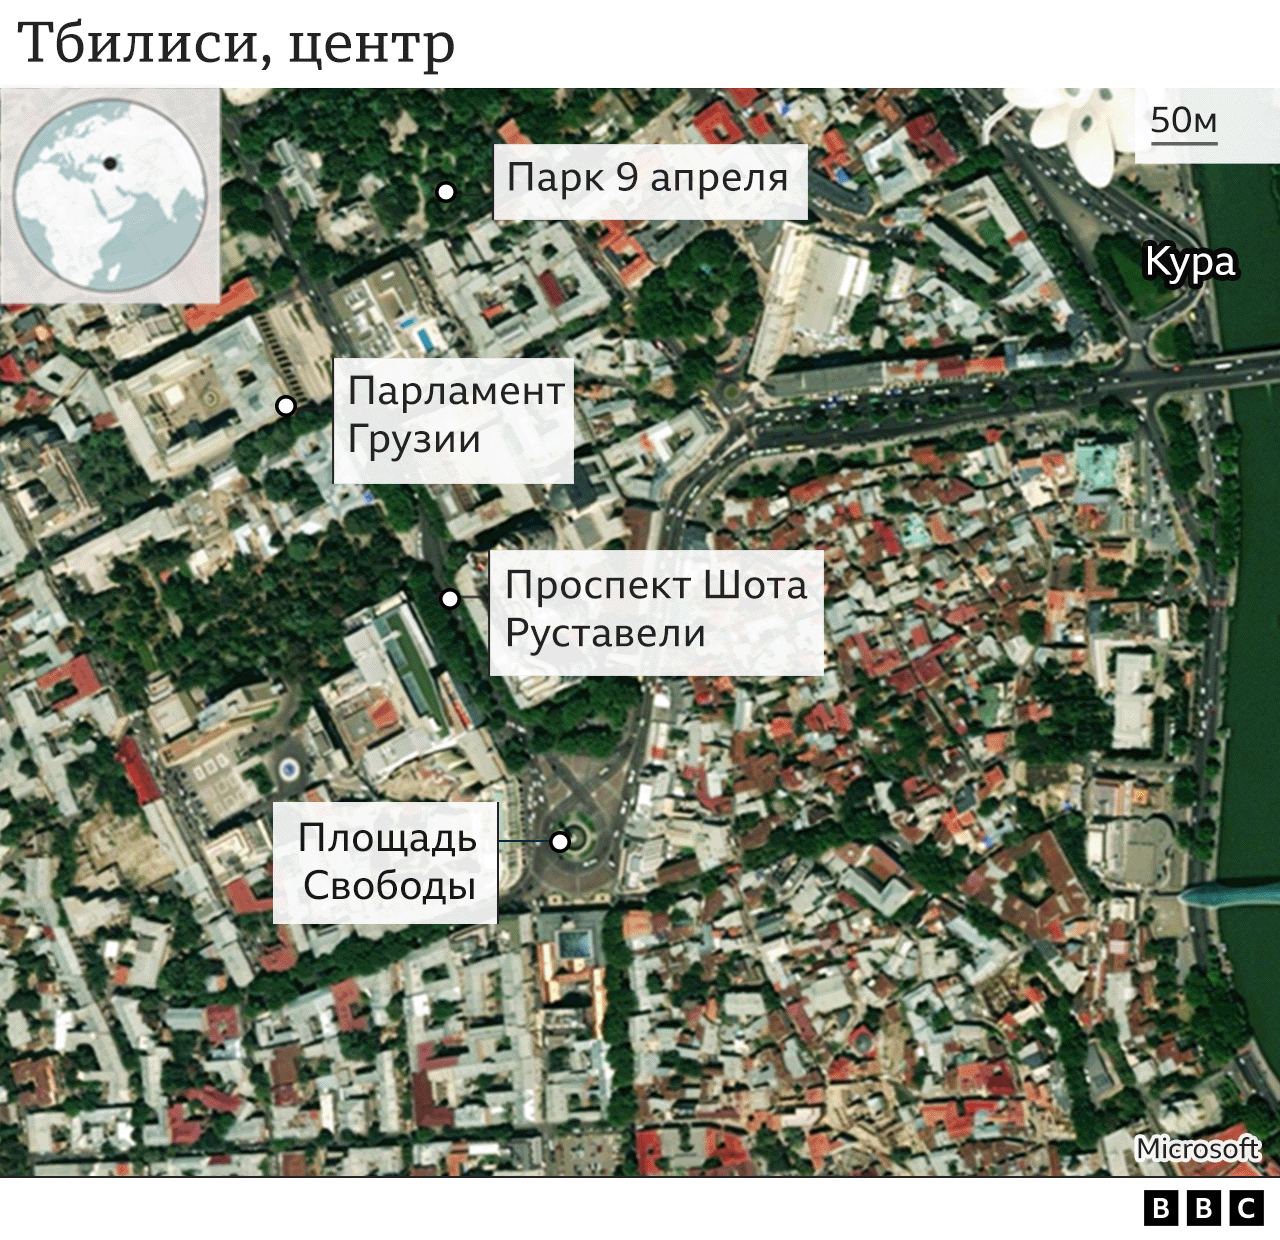 Карта центра Тбилиси